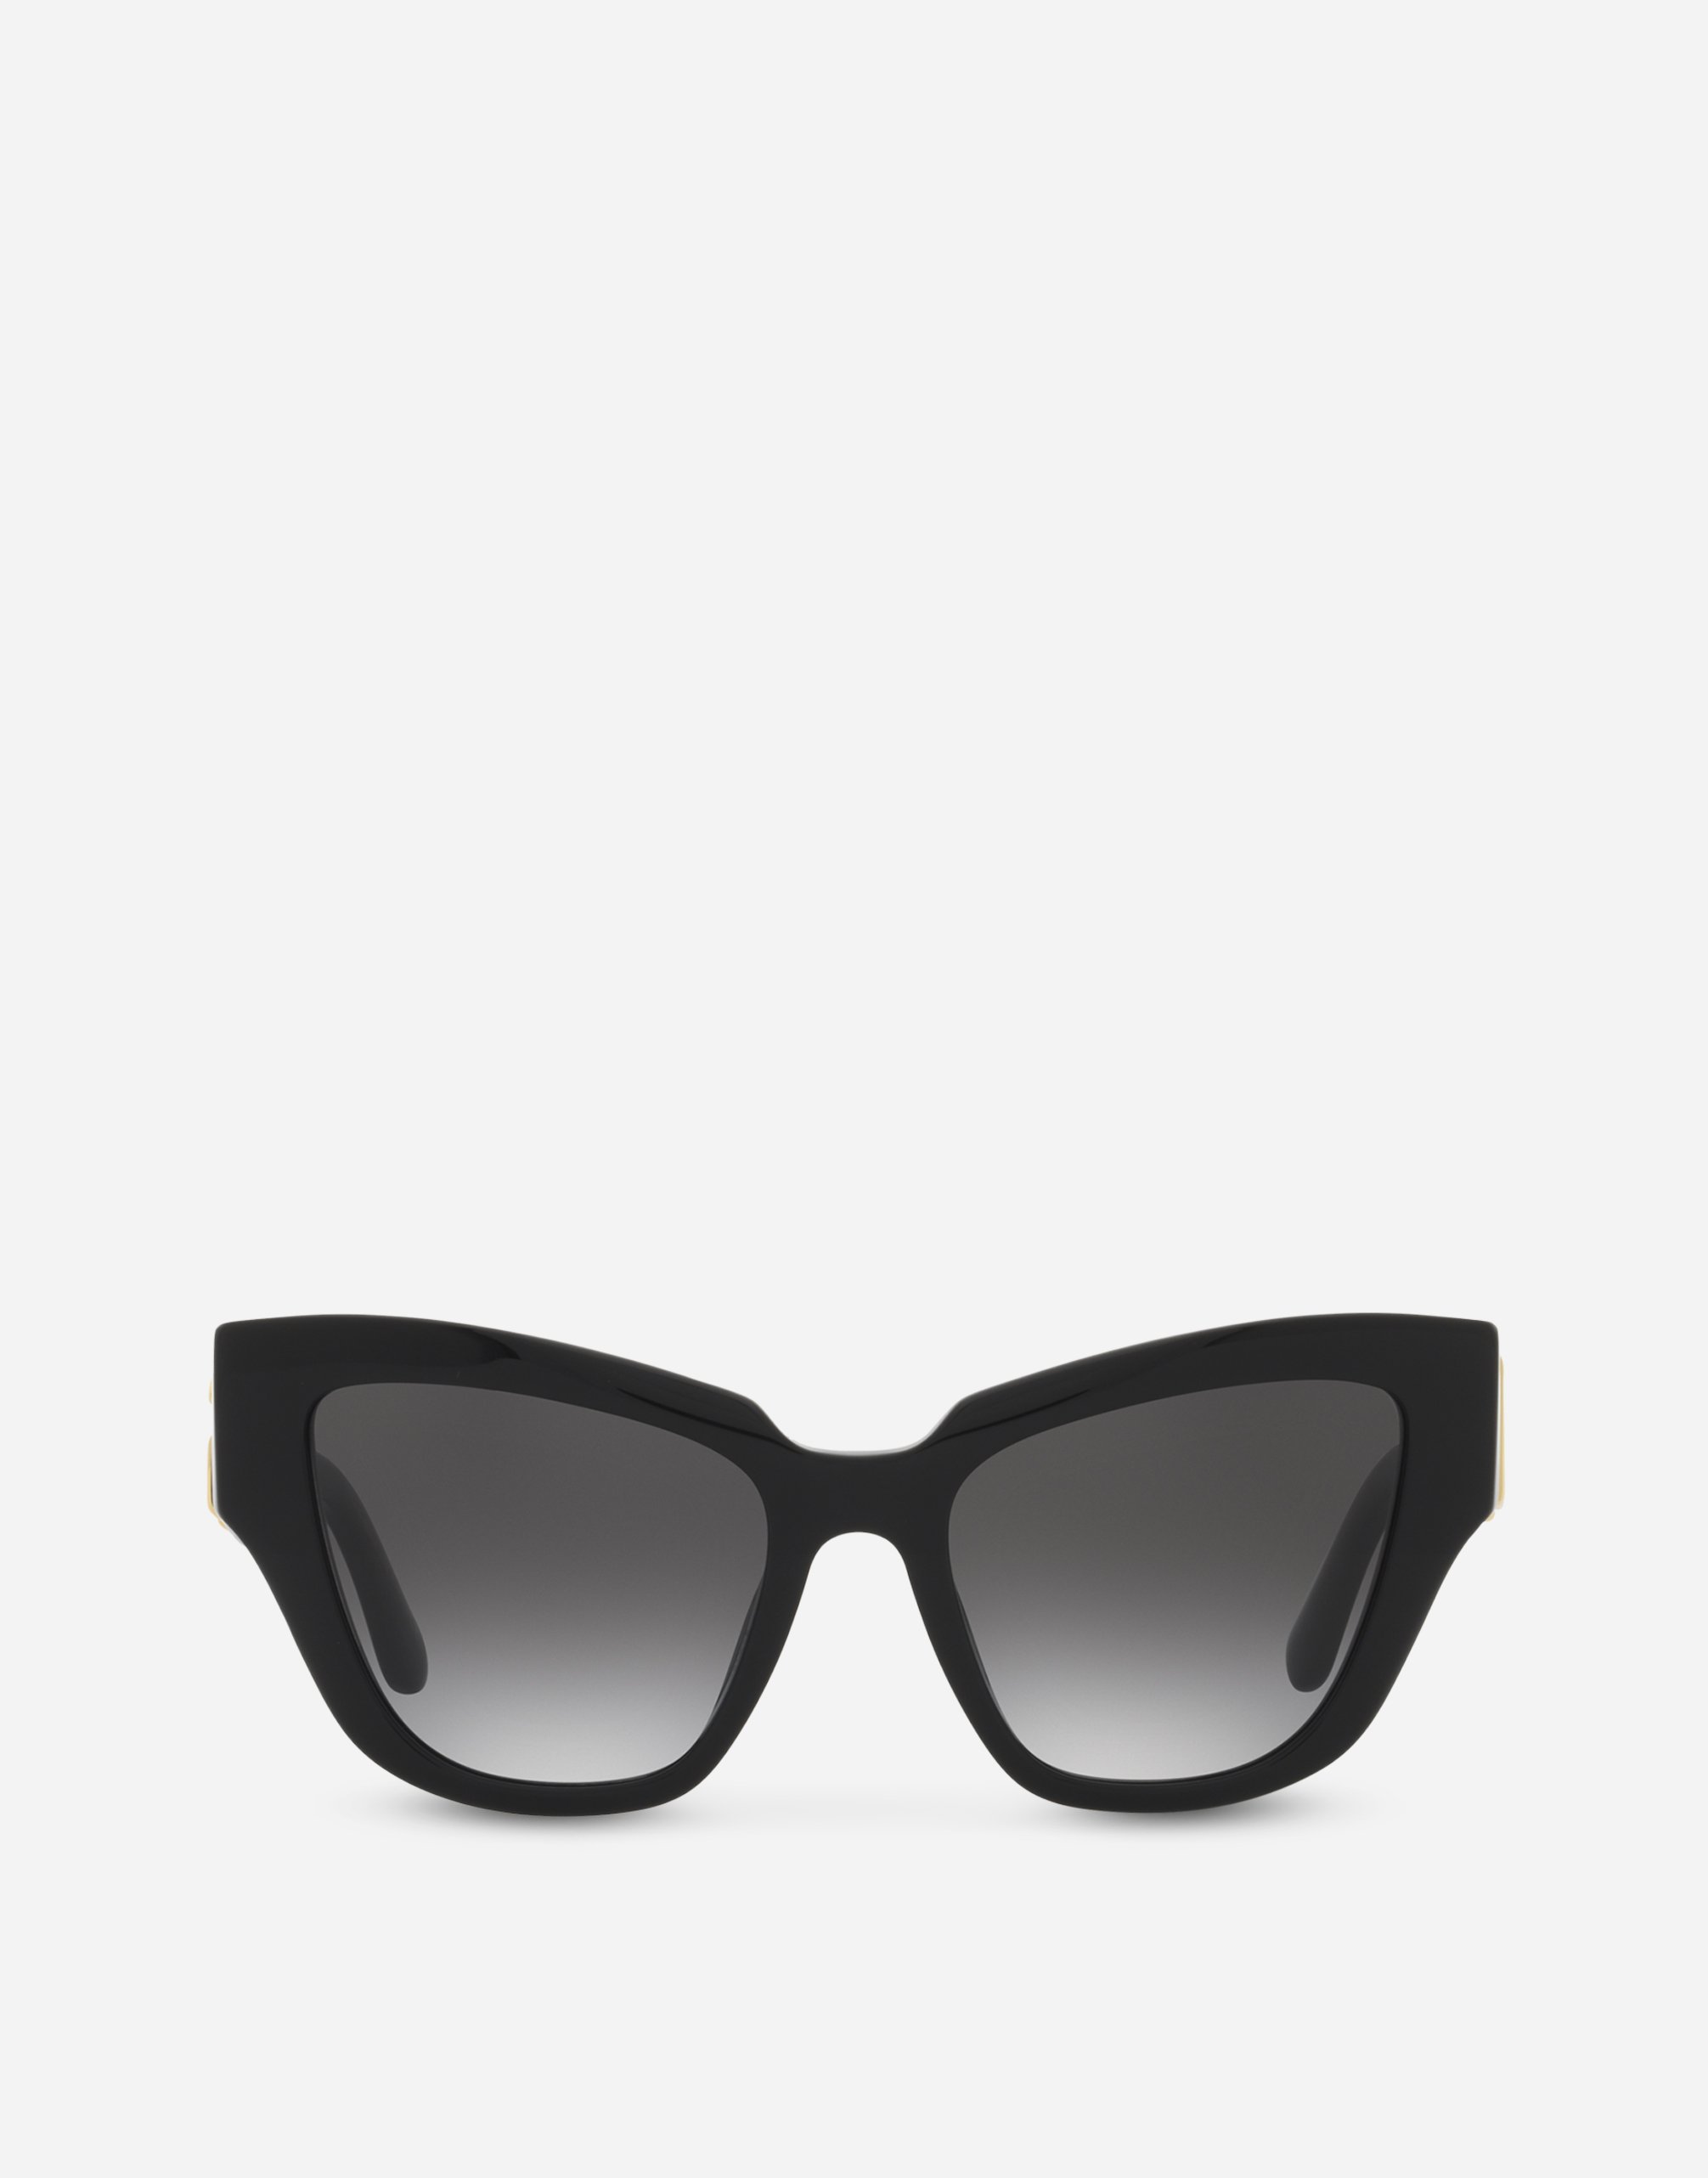 DG crossed sunglasses in Black